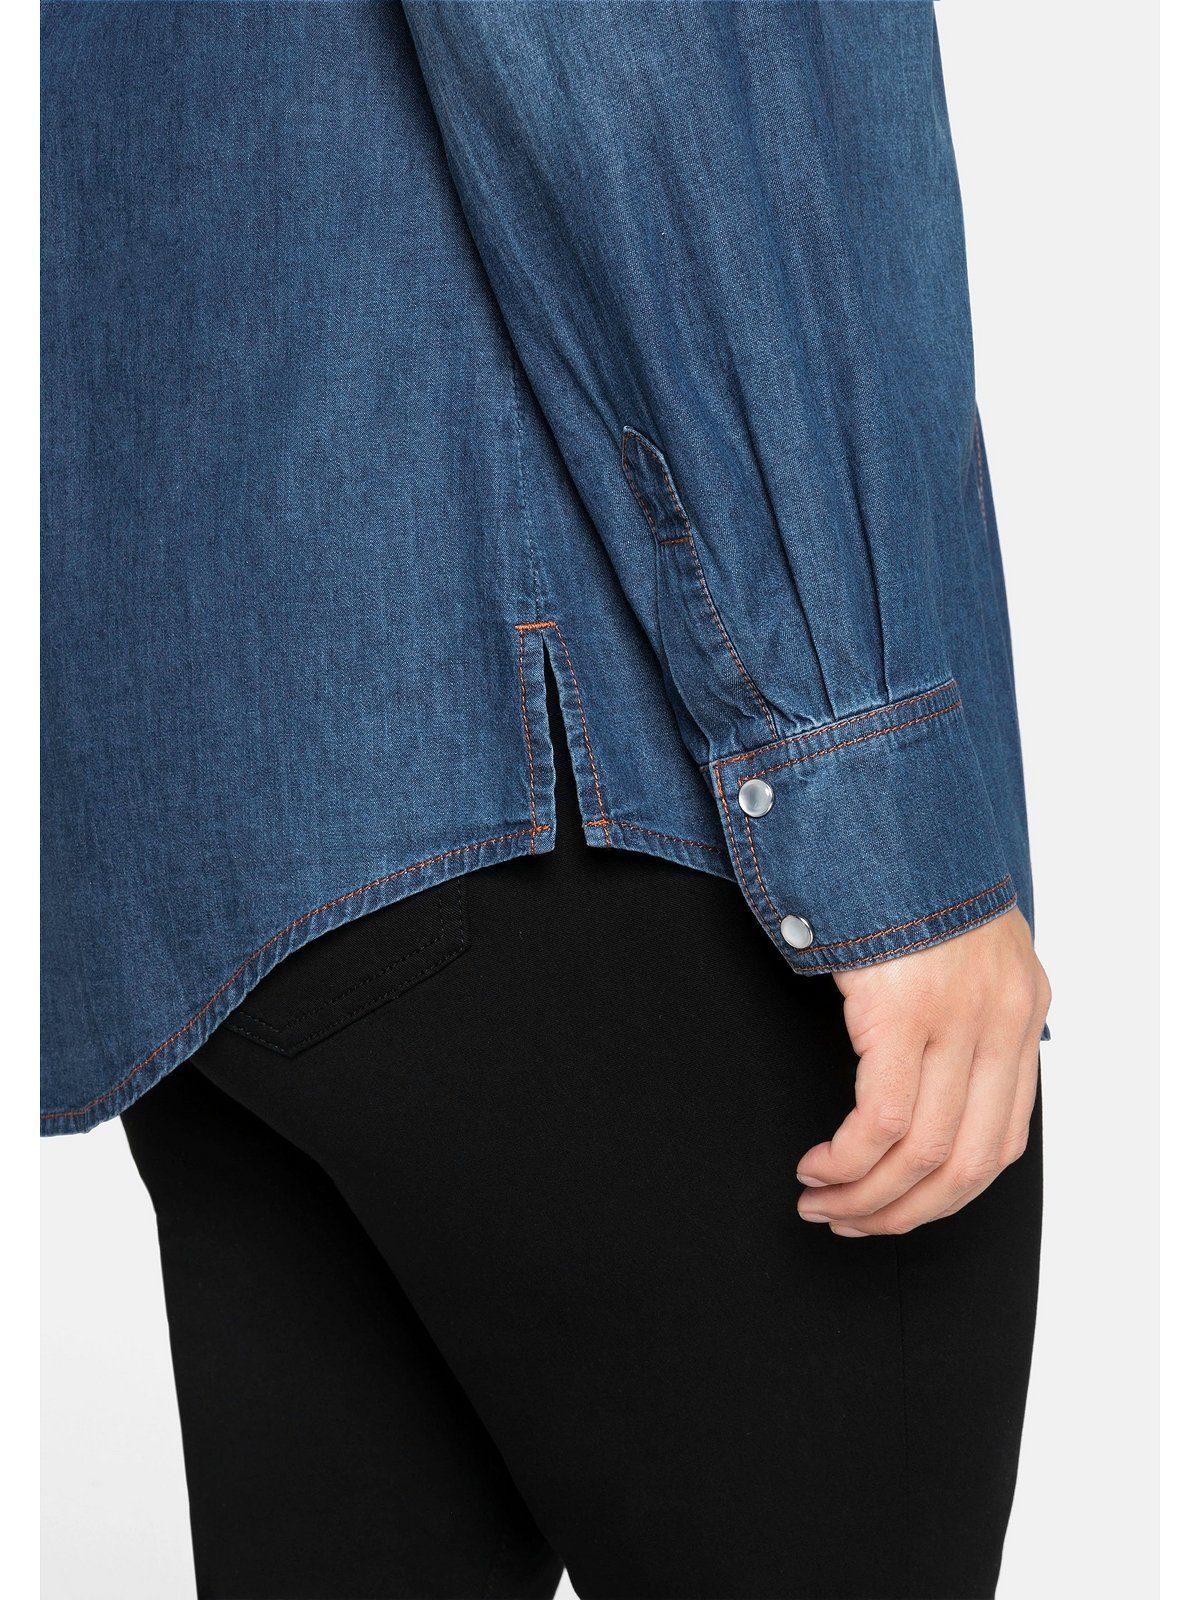 Sheego Jeansbluse Große Größen mit blue Denim Brusttaschen Knopfleiste und